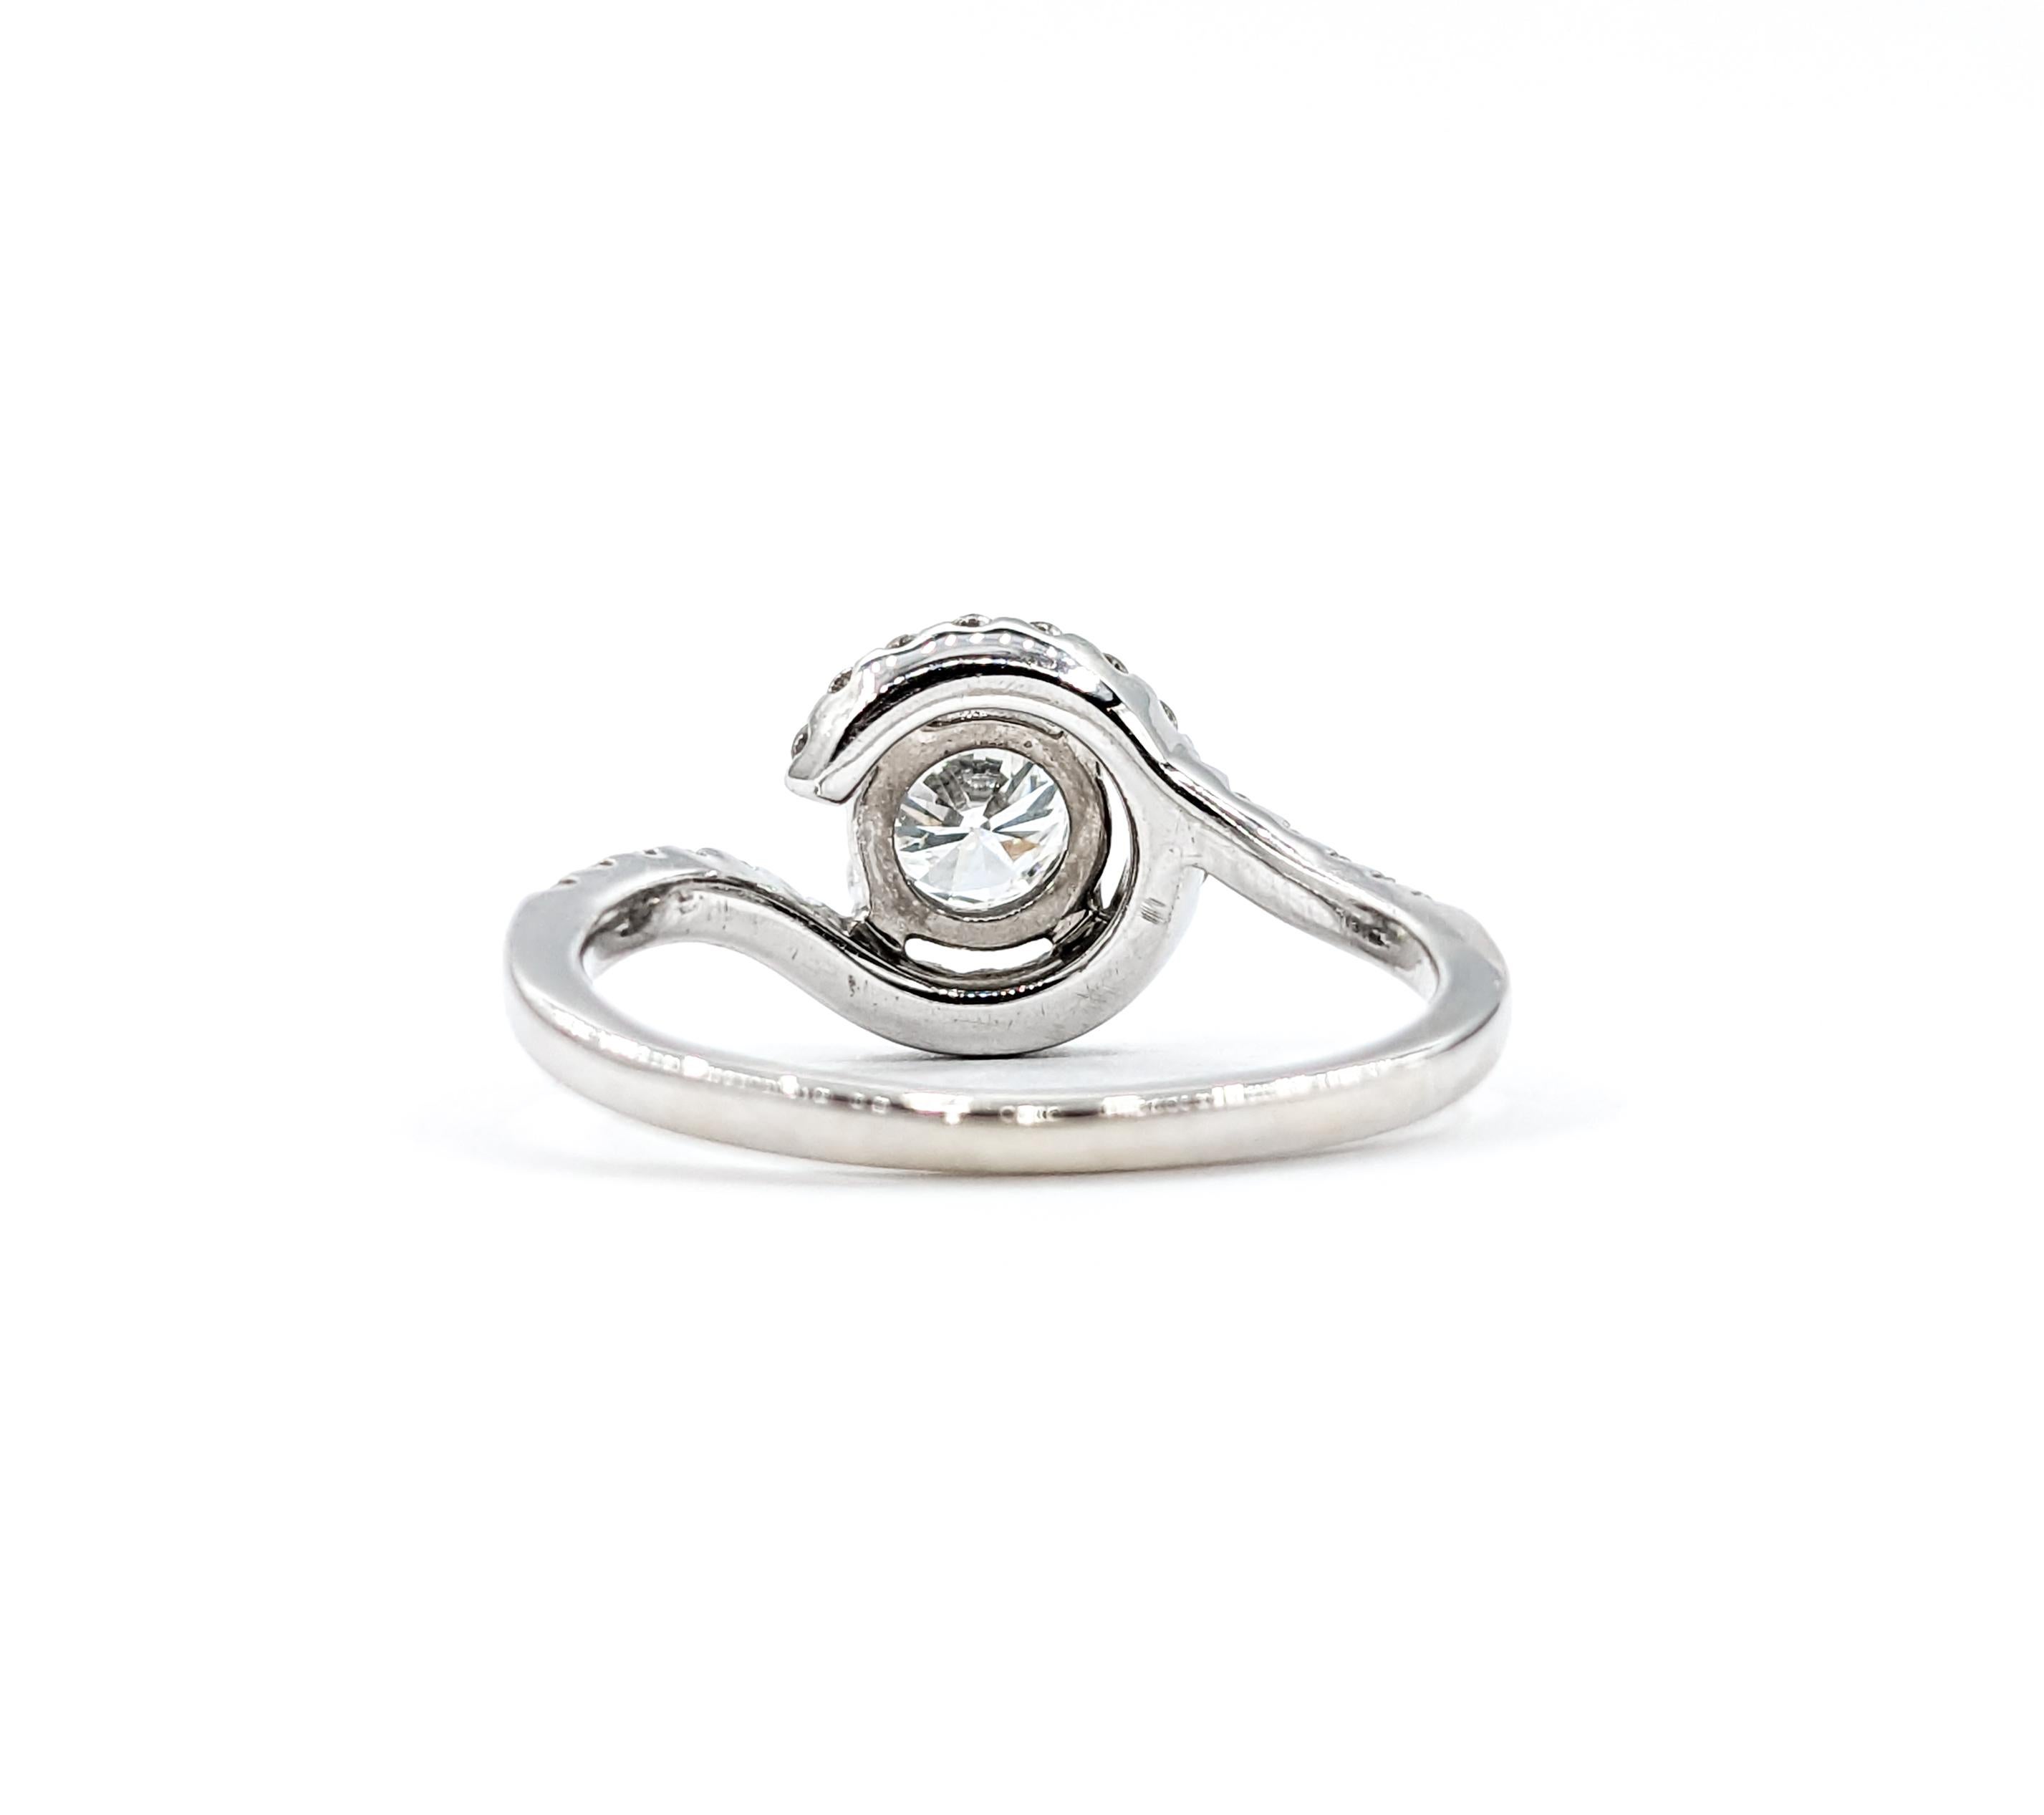 GIA Graded VVS1 Diamond Engagement Ring White Gold  For Sale 2